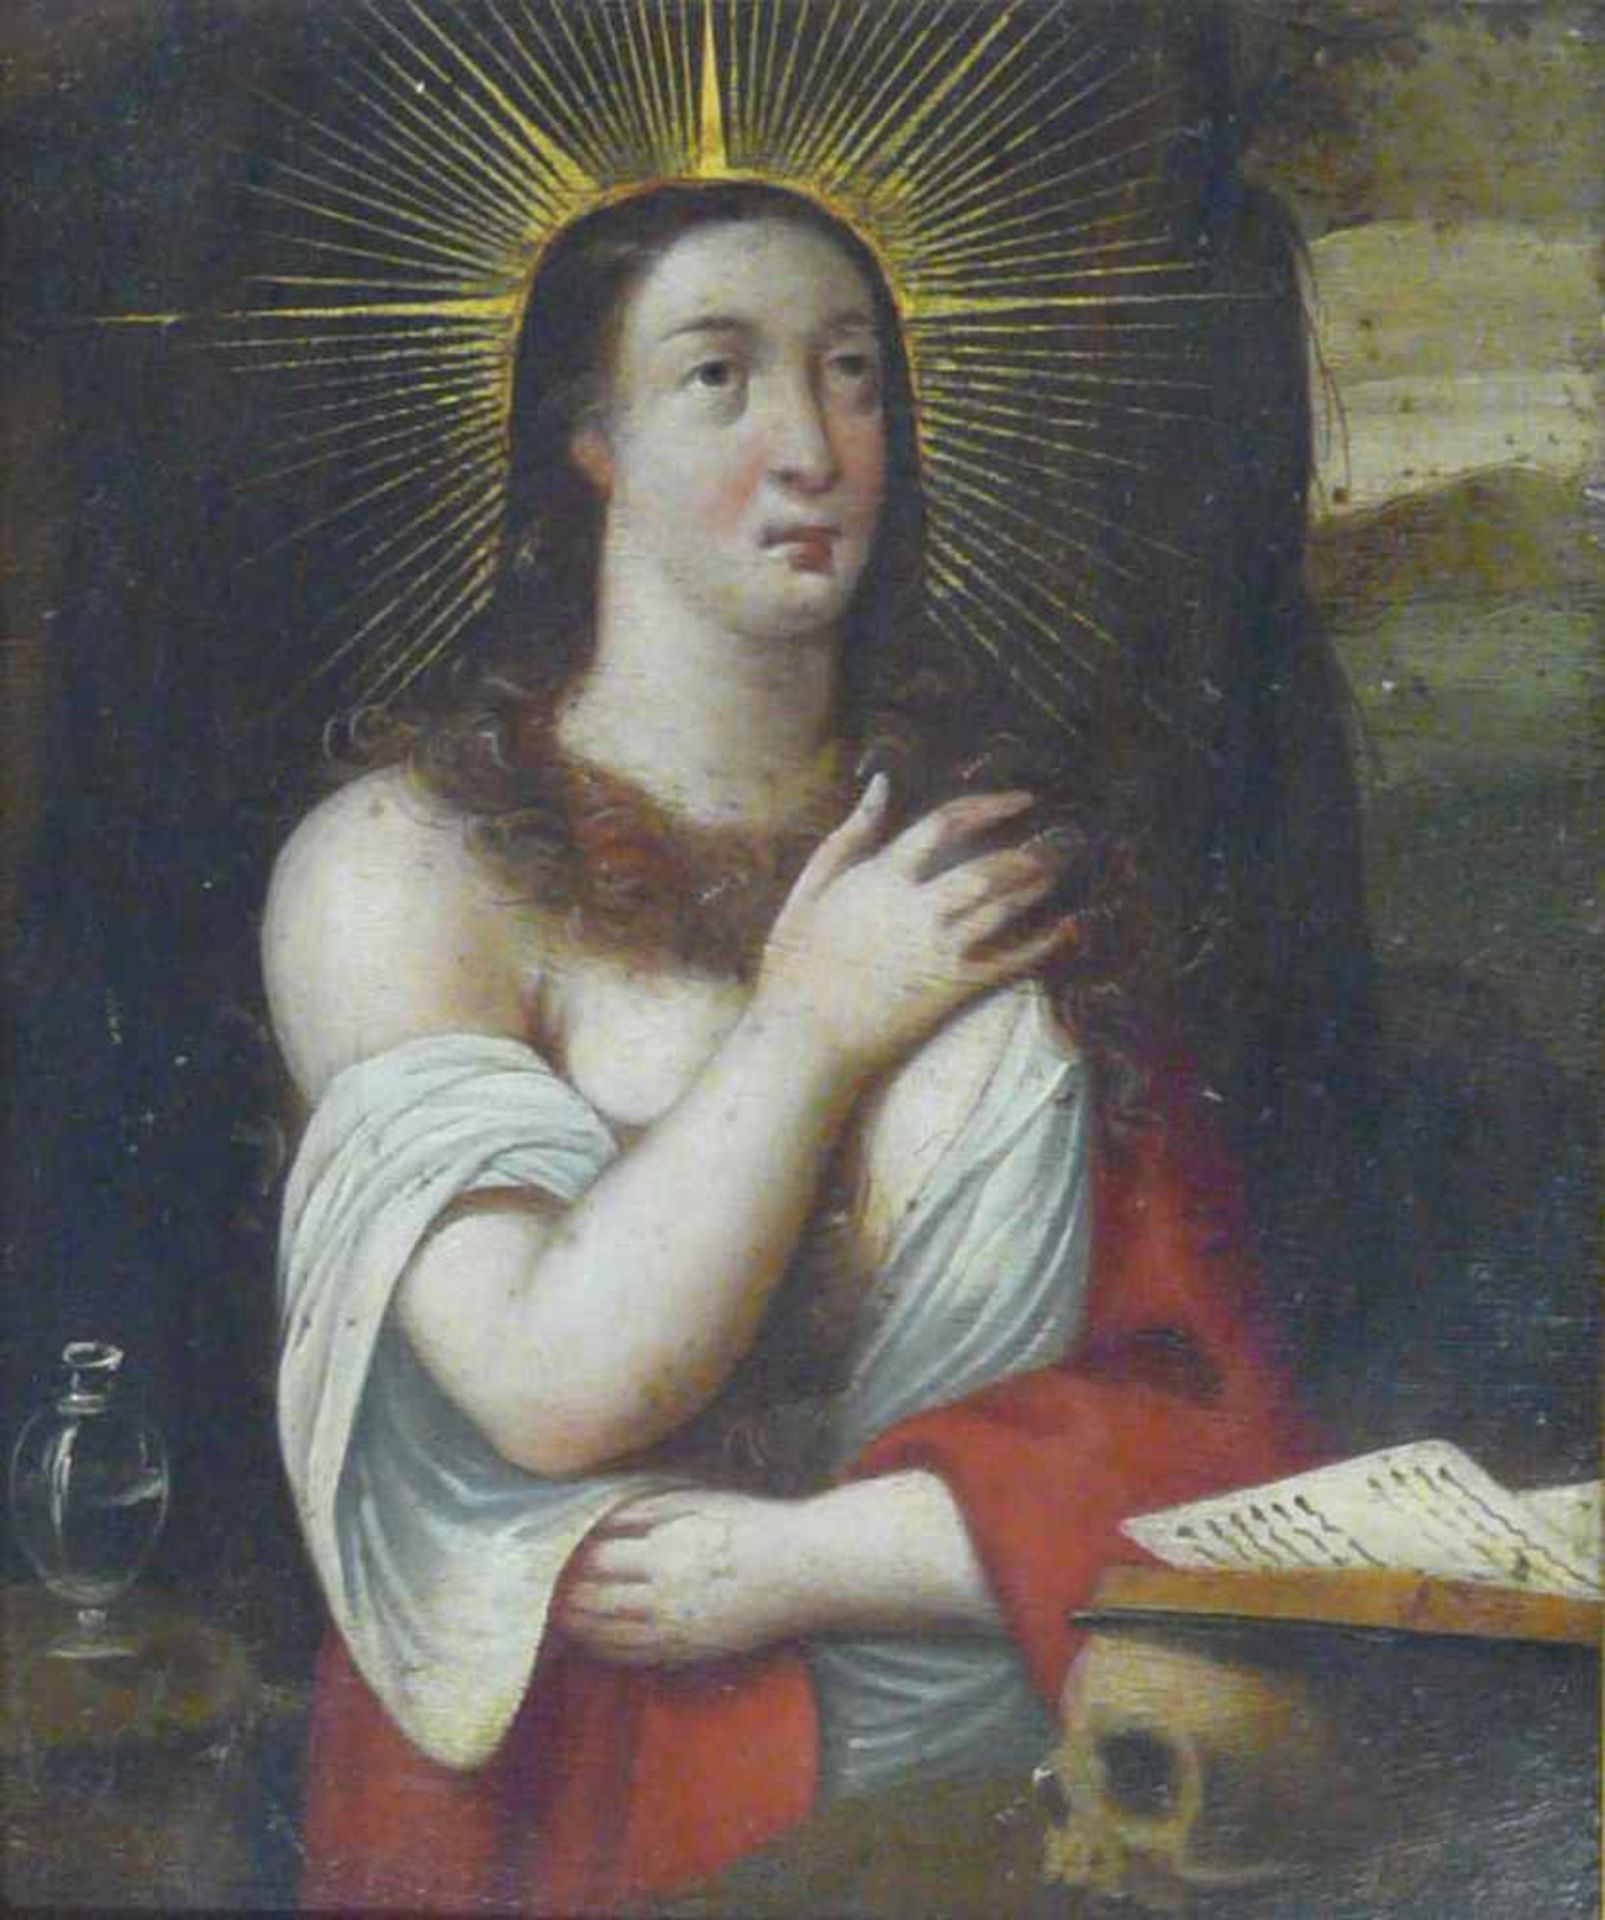 Maria MagdalenaAltmeister um 1600. In der Tradition der Italienischen Renaissance, motivisch